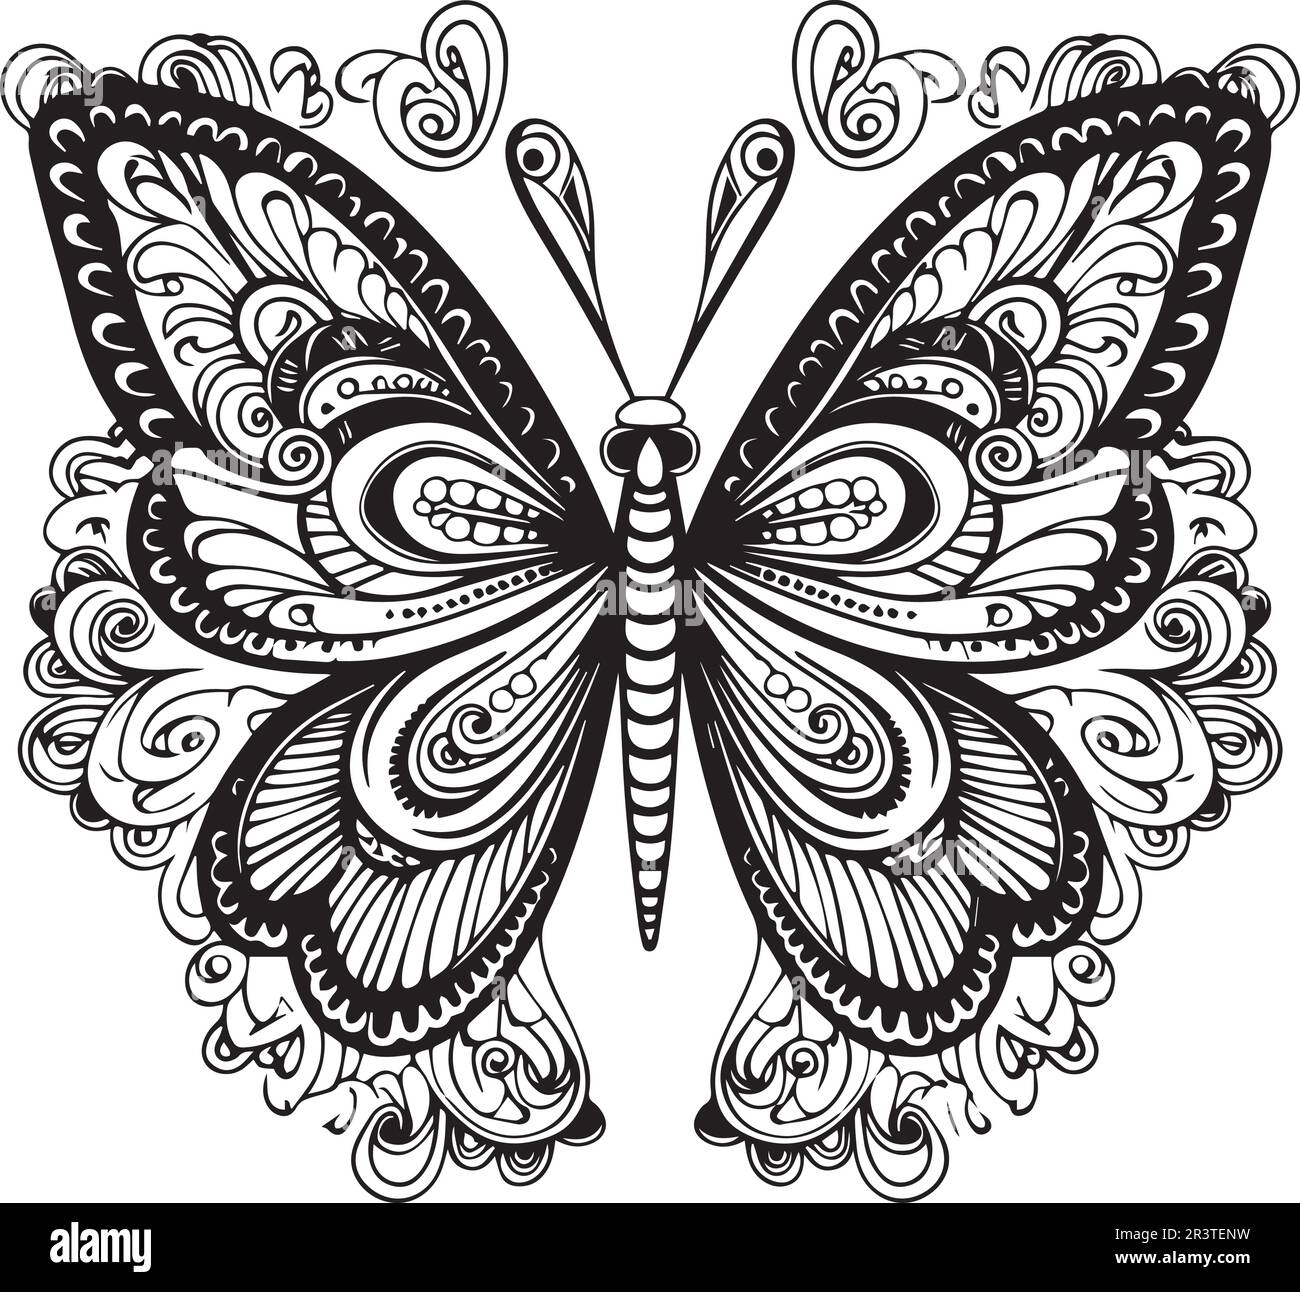 Dessin noir et blanc d'une illustration de vecteur papillon. Illustration de Vecteur